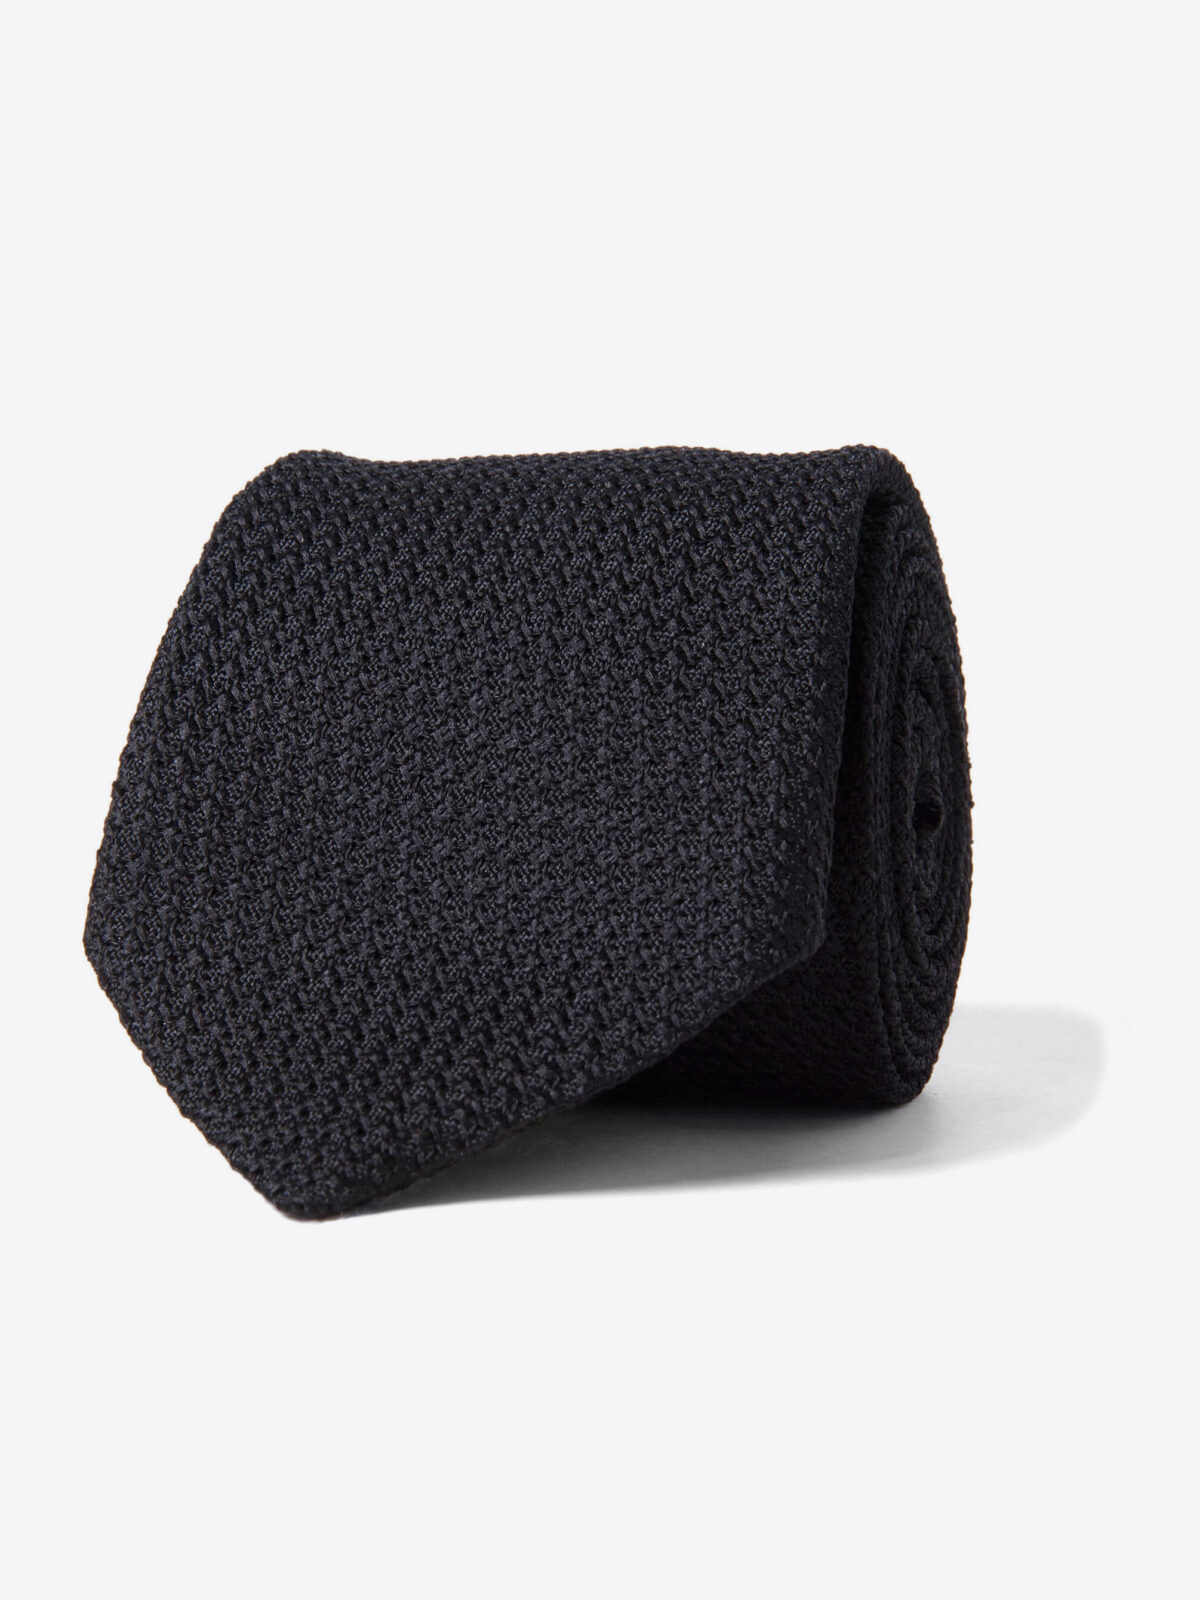 Black Silk Grenadine Tie